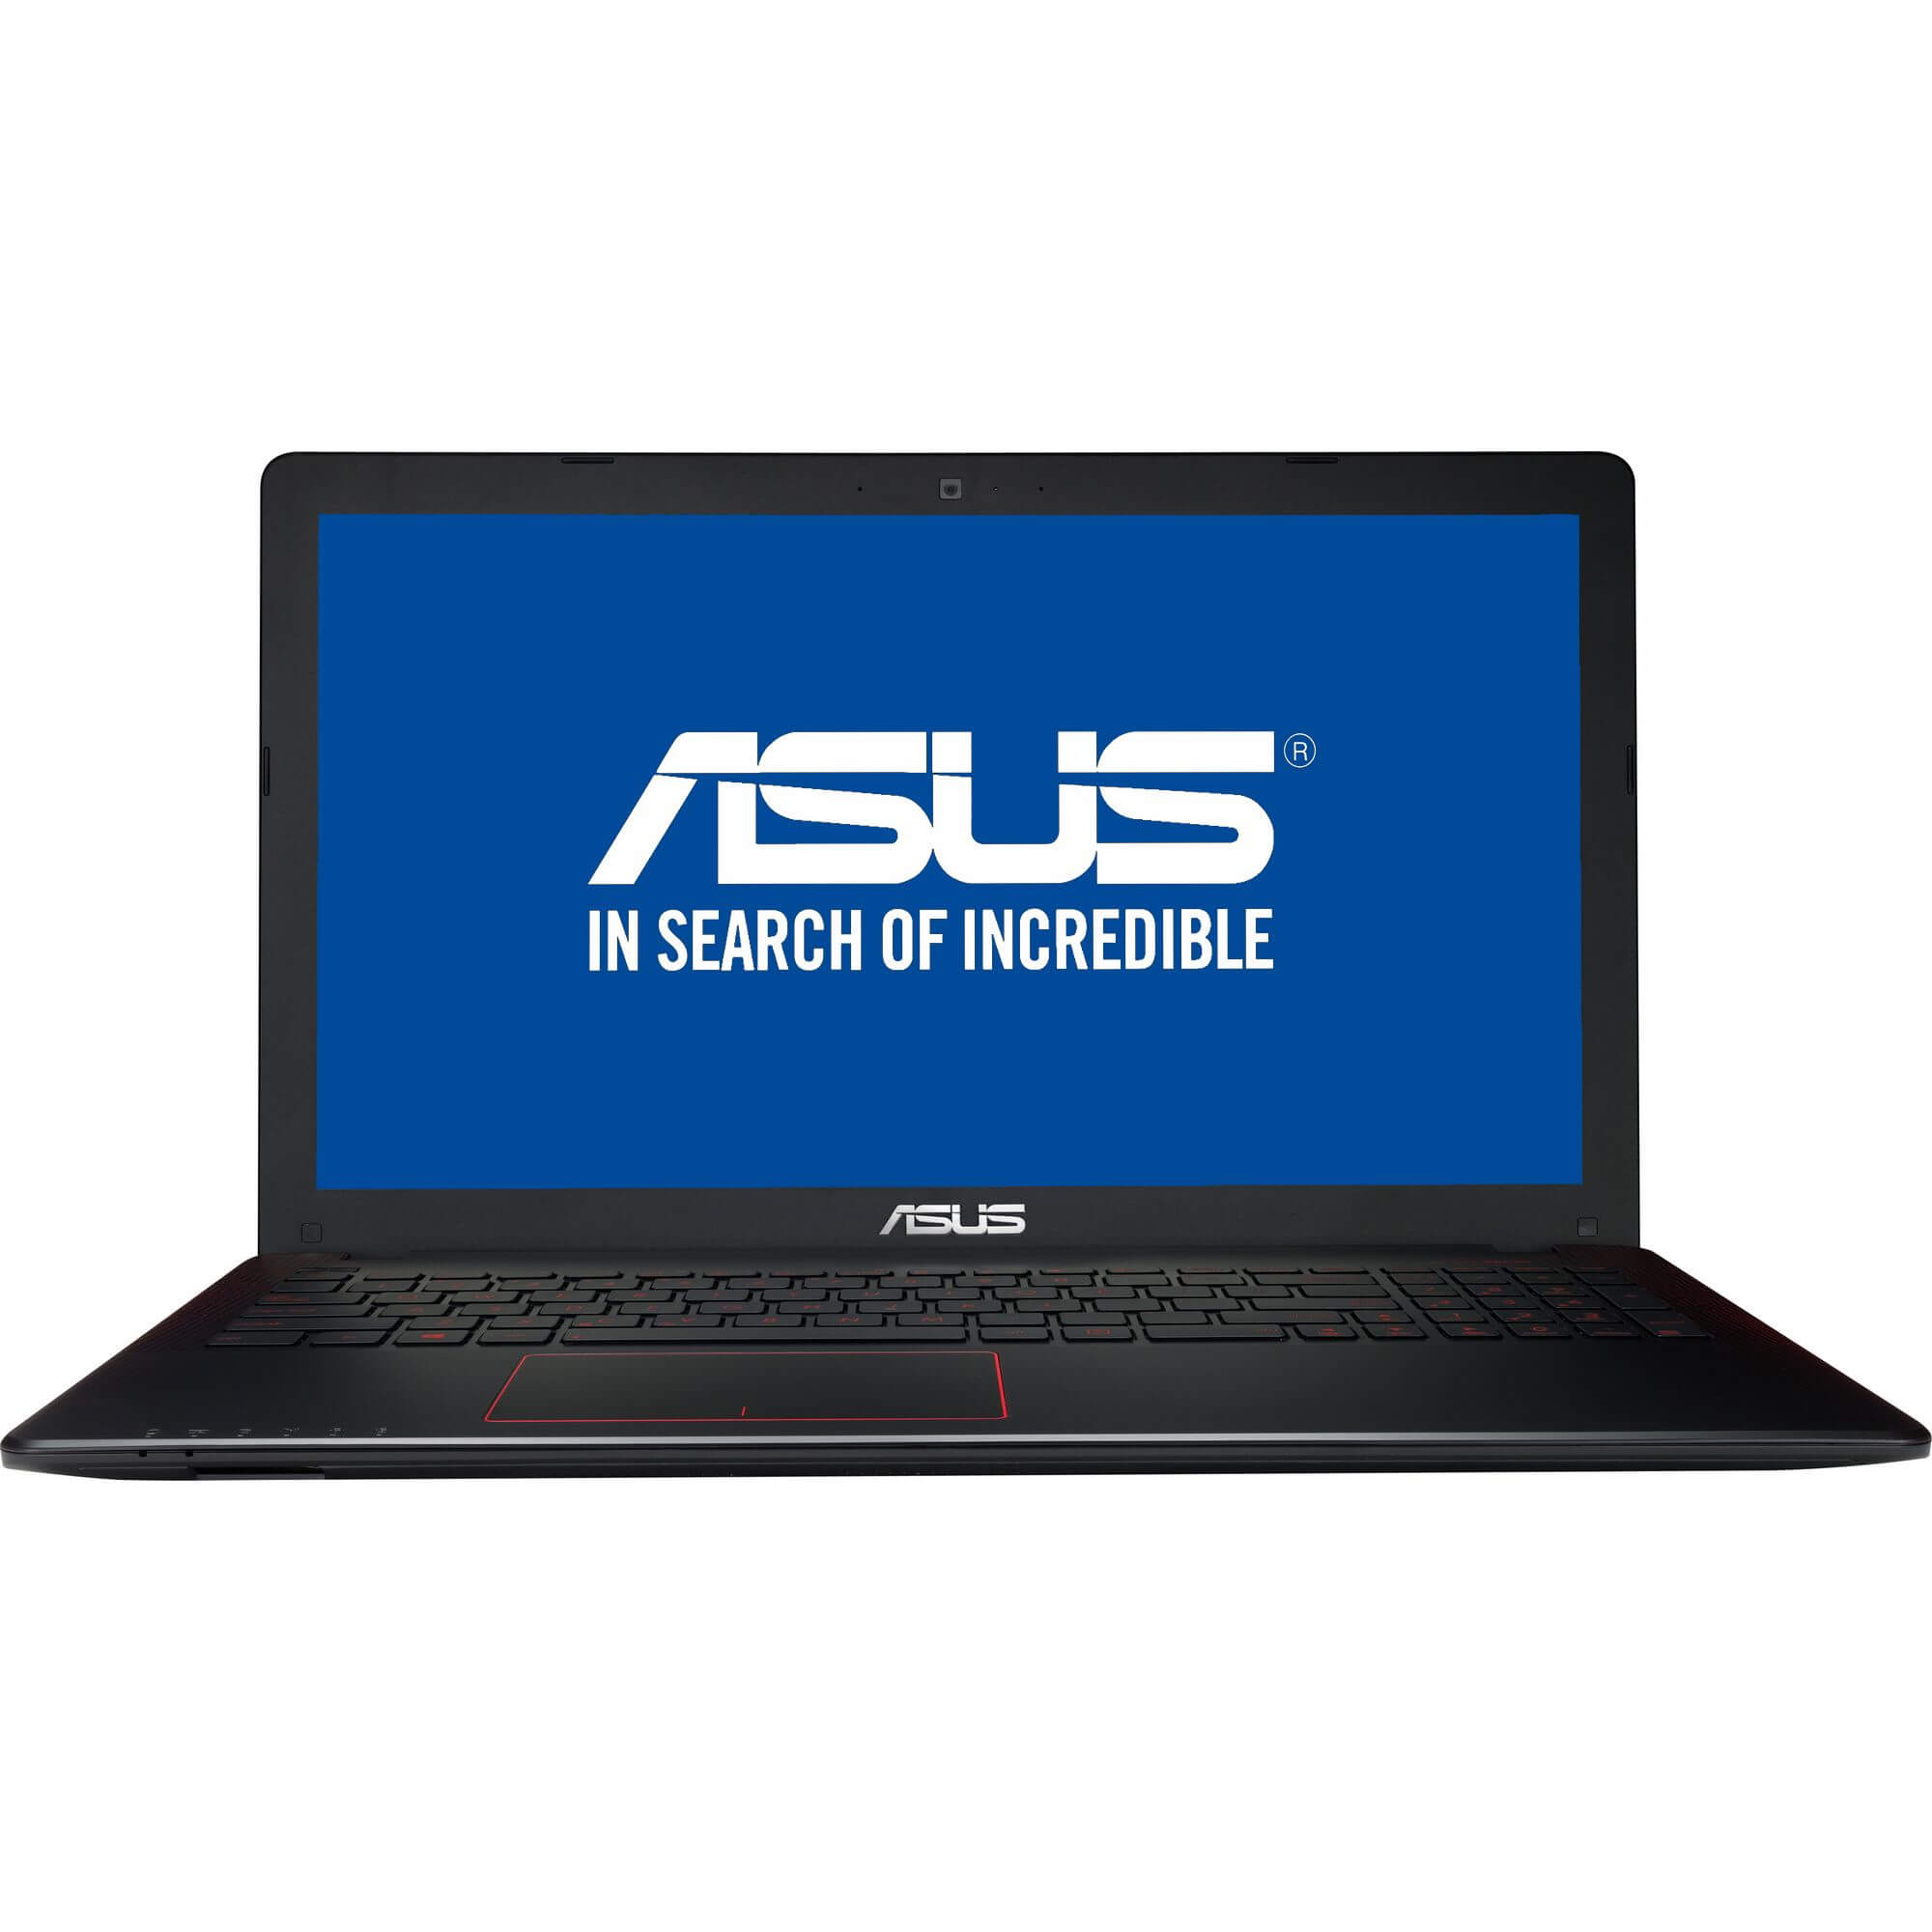  Laptop Asus F550JX-DM247D, Intel Core i7-4720HQ, 8GB DDR3, HDD 1TB, nVidia GeForce GTX 950M, Free DOS 